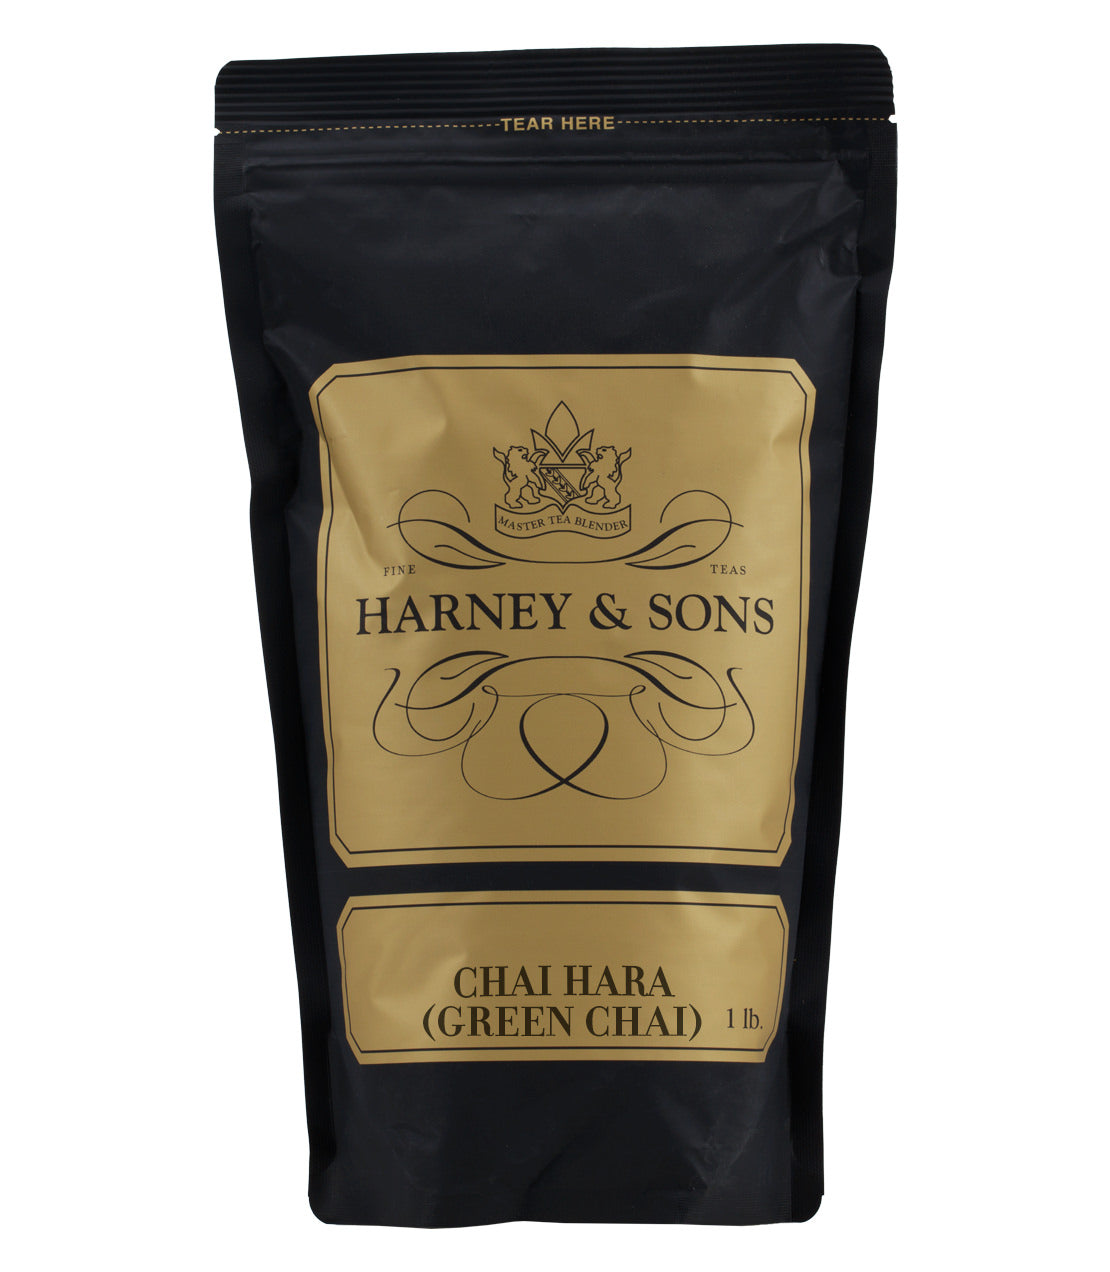 Chai Hara (Green Chai) - Loose 1 lb. Bag - Harney & Sons Fine Teas